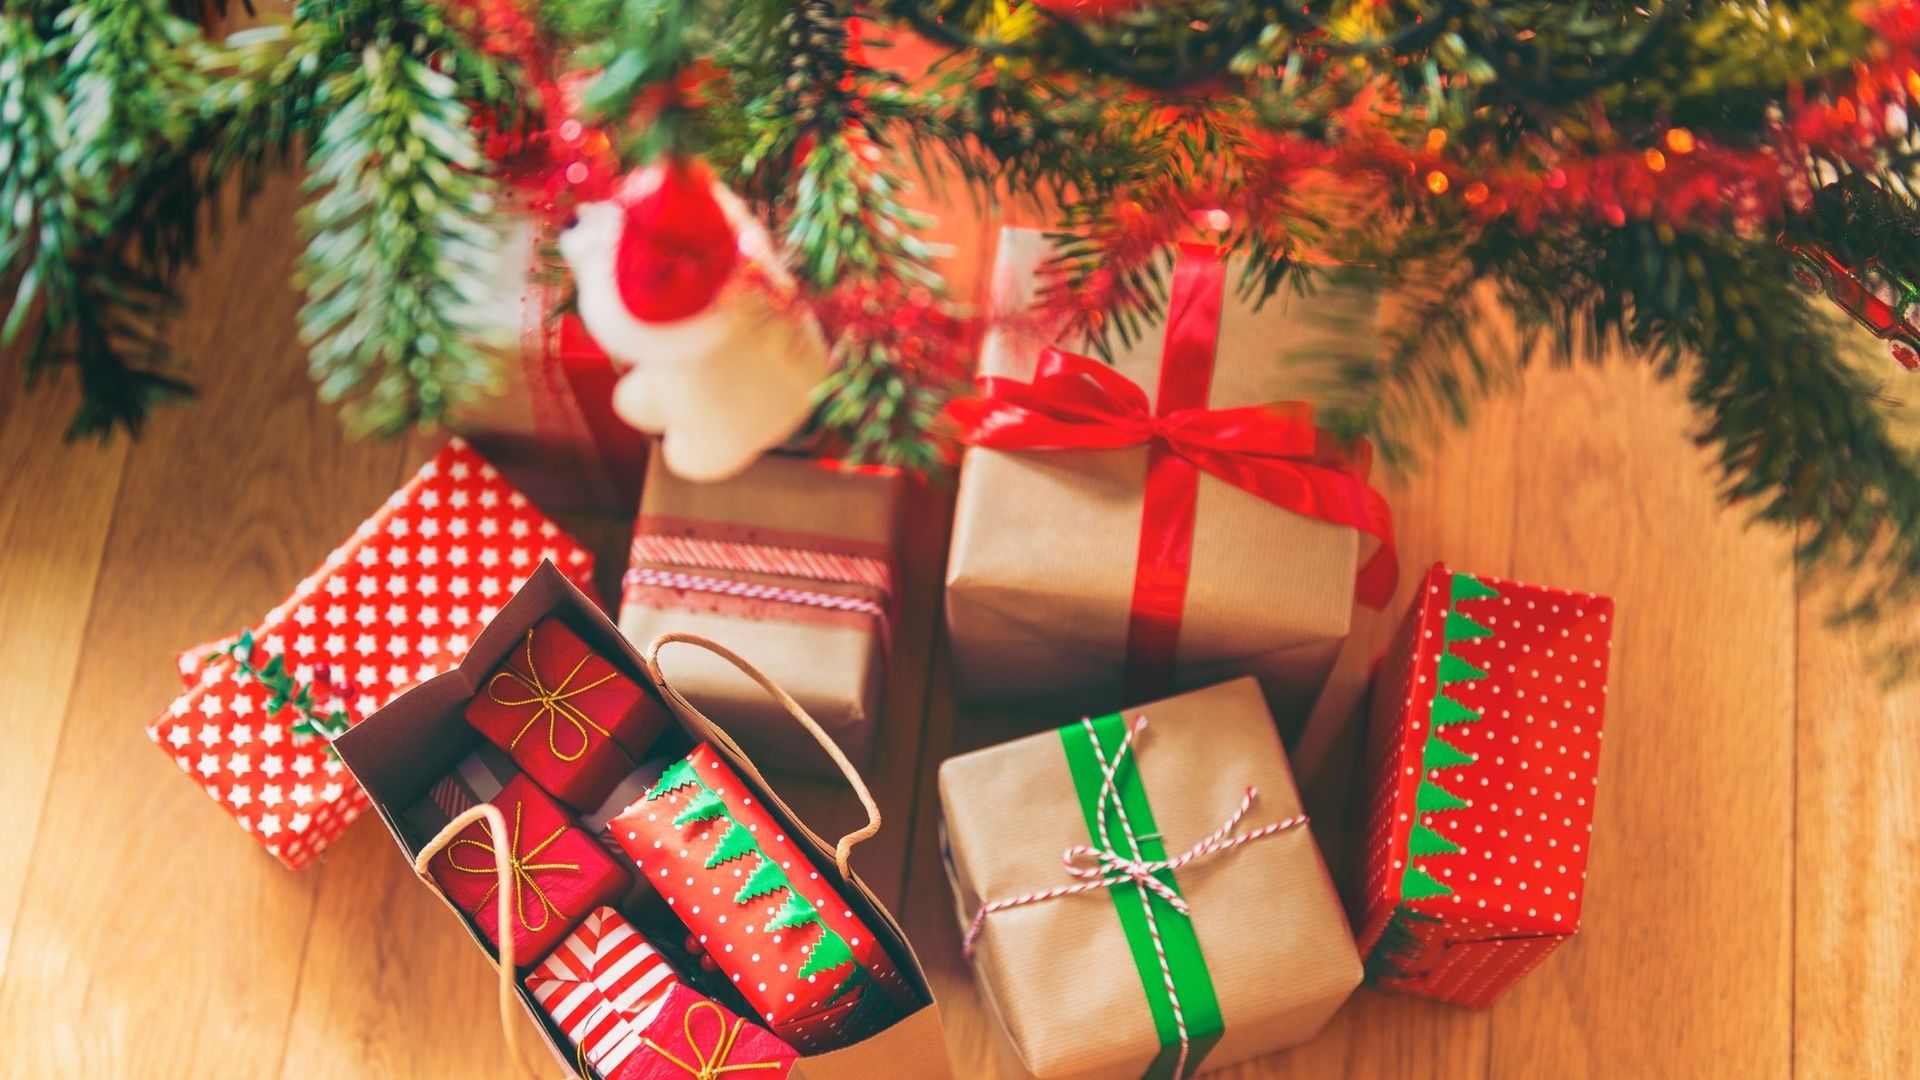 Les plus belles idées cadeaux de Noël 100% EPV - Lartigue 1910